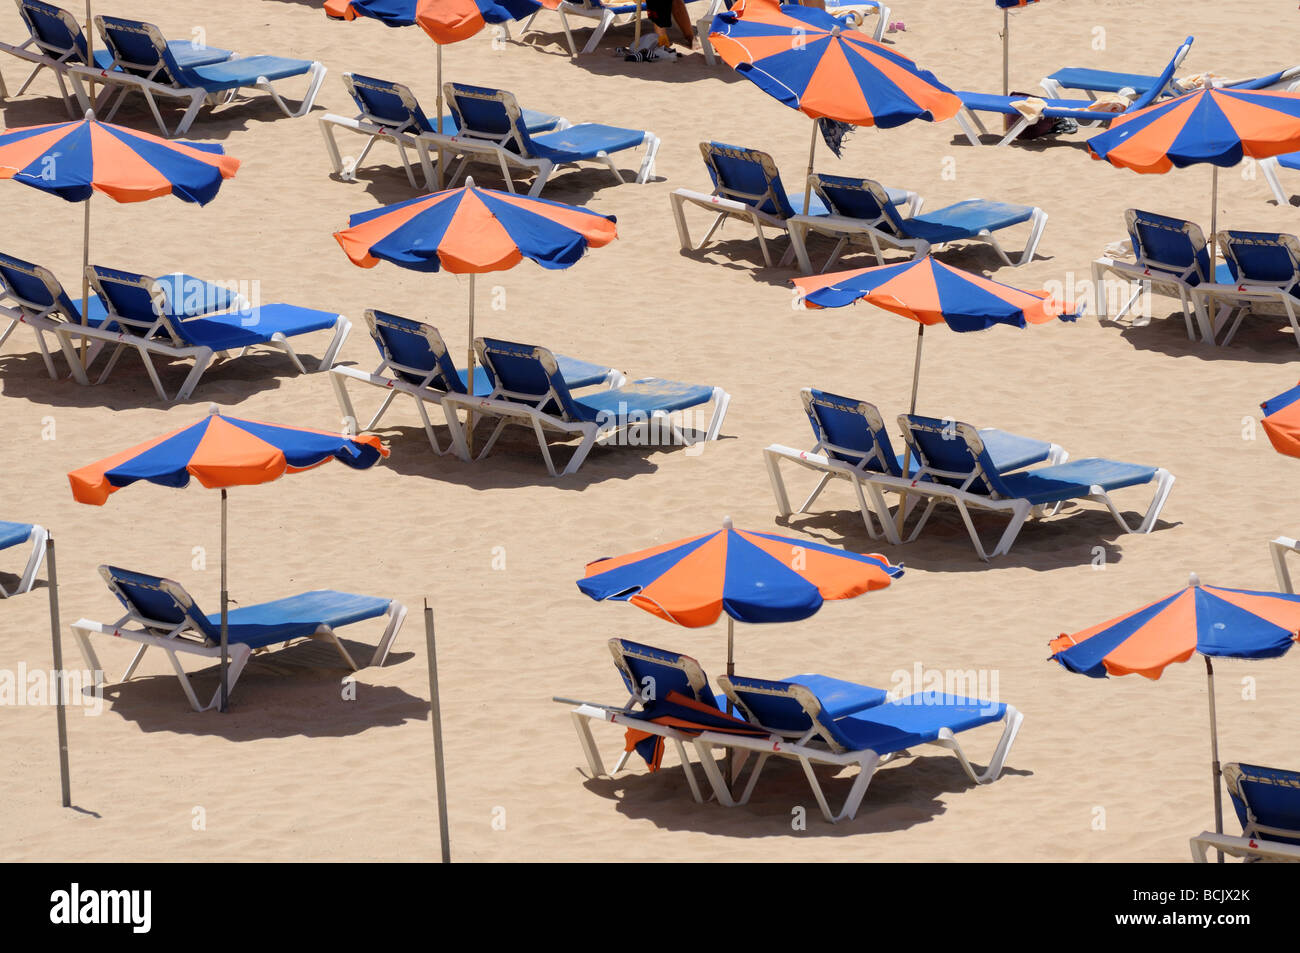 Sonnenliege am Strand. Kanarischen Insel Fuerteventura, Spanien Stockfoto